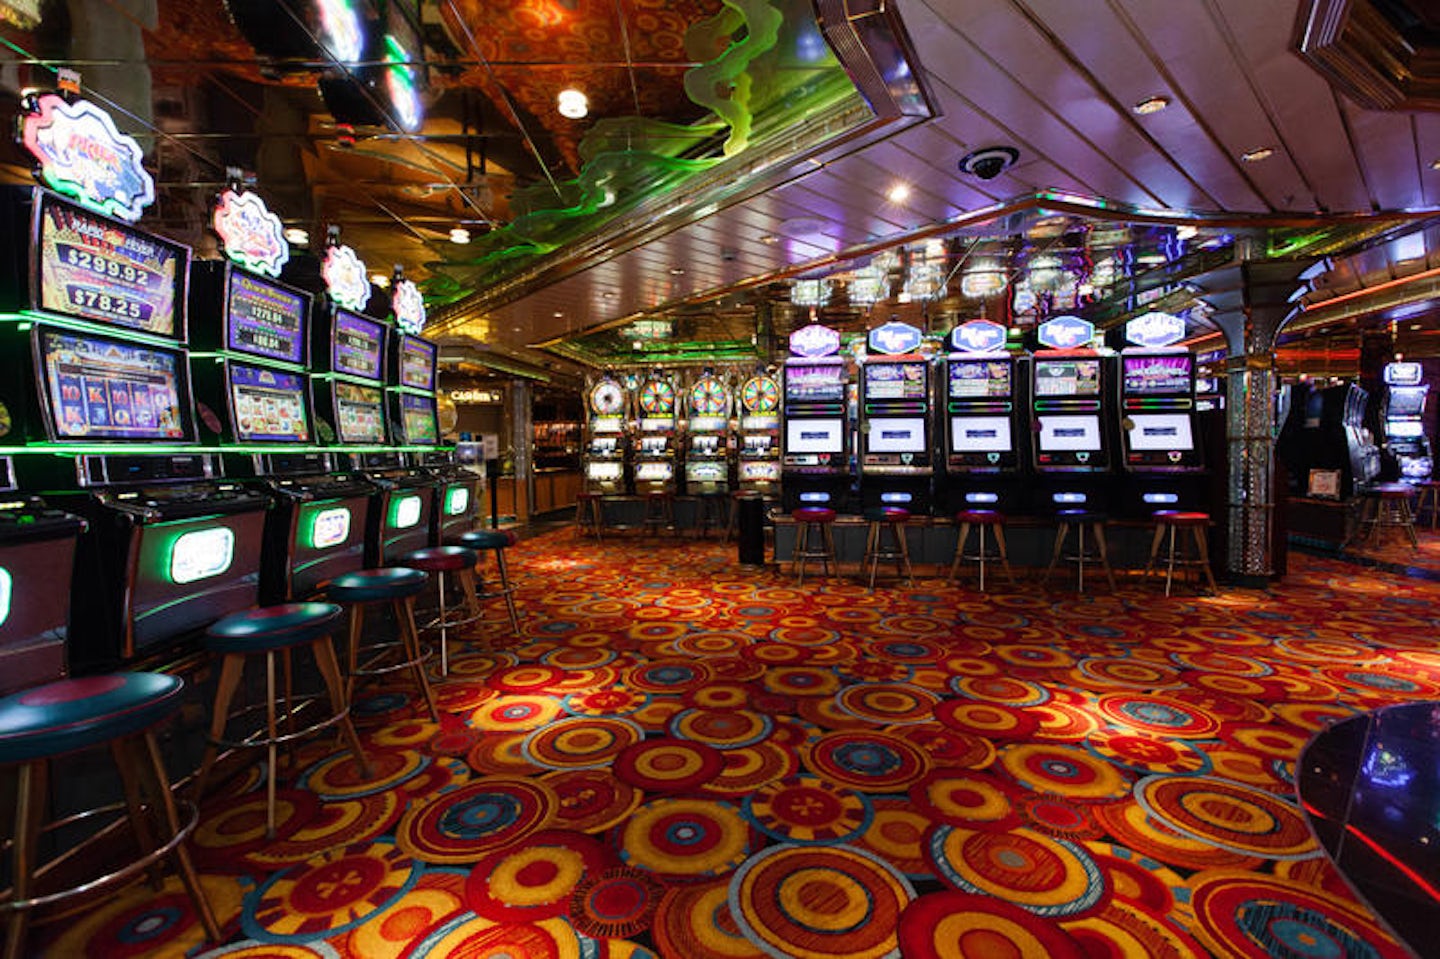 Casino Royale on Grandeur of the Seas